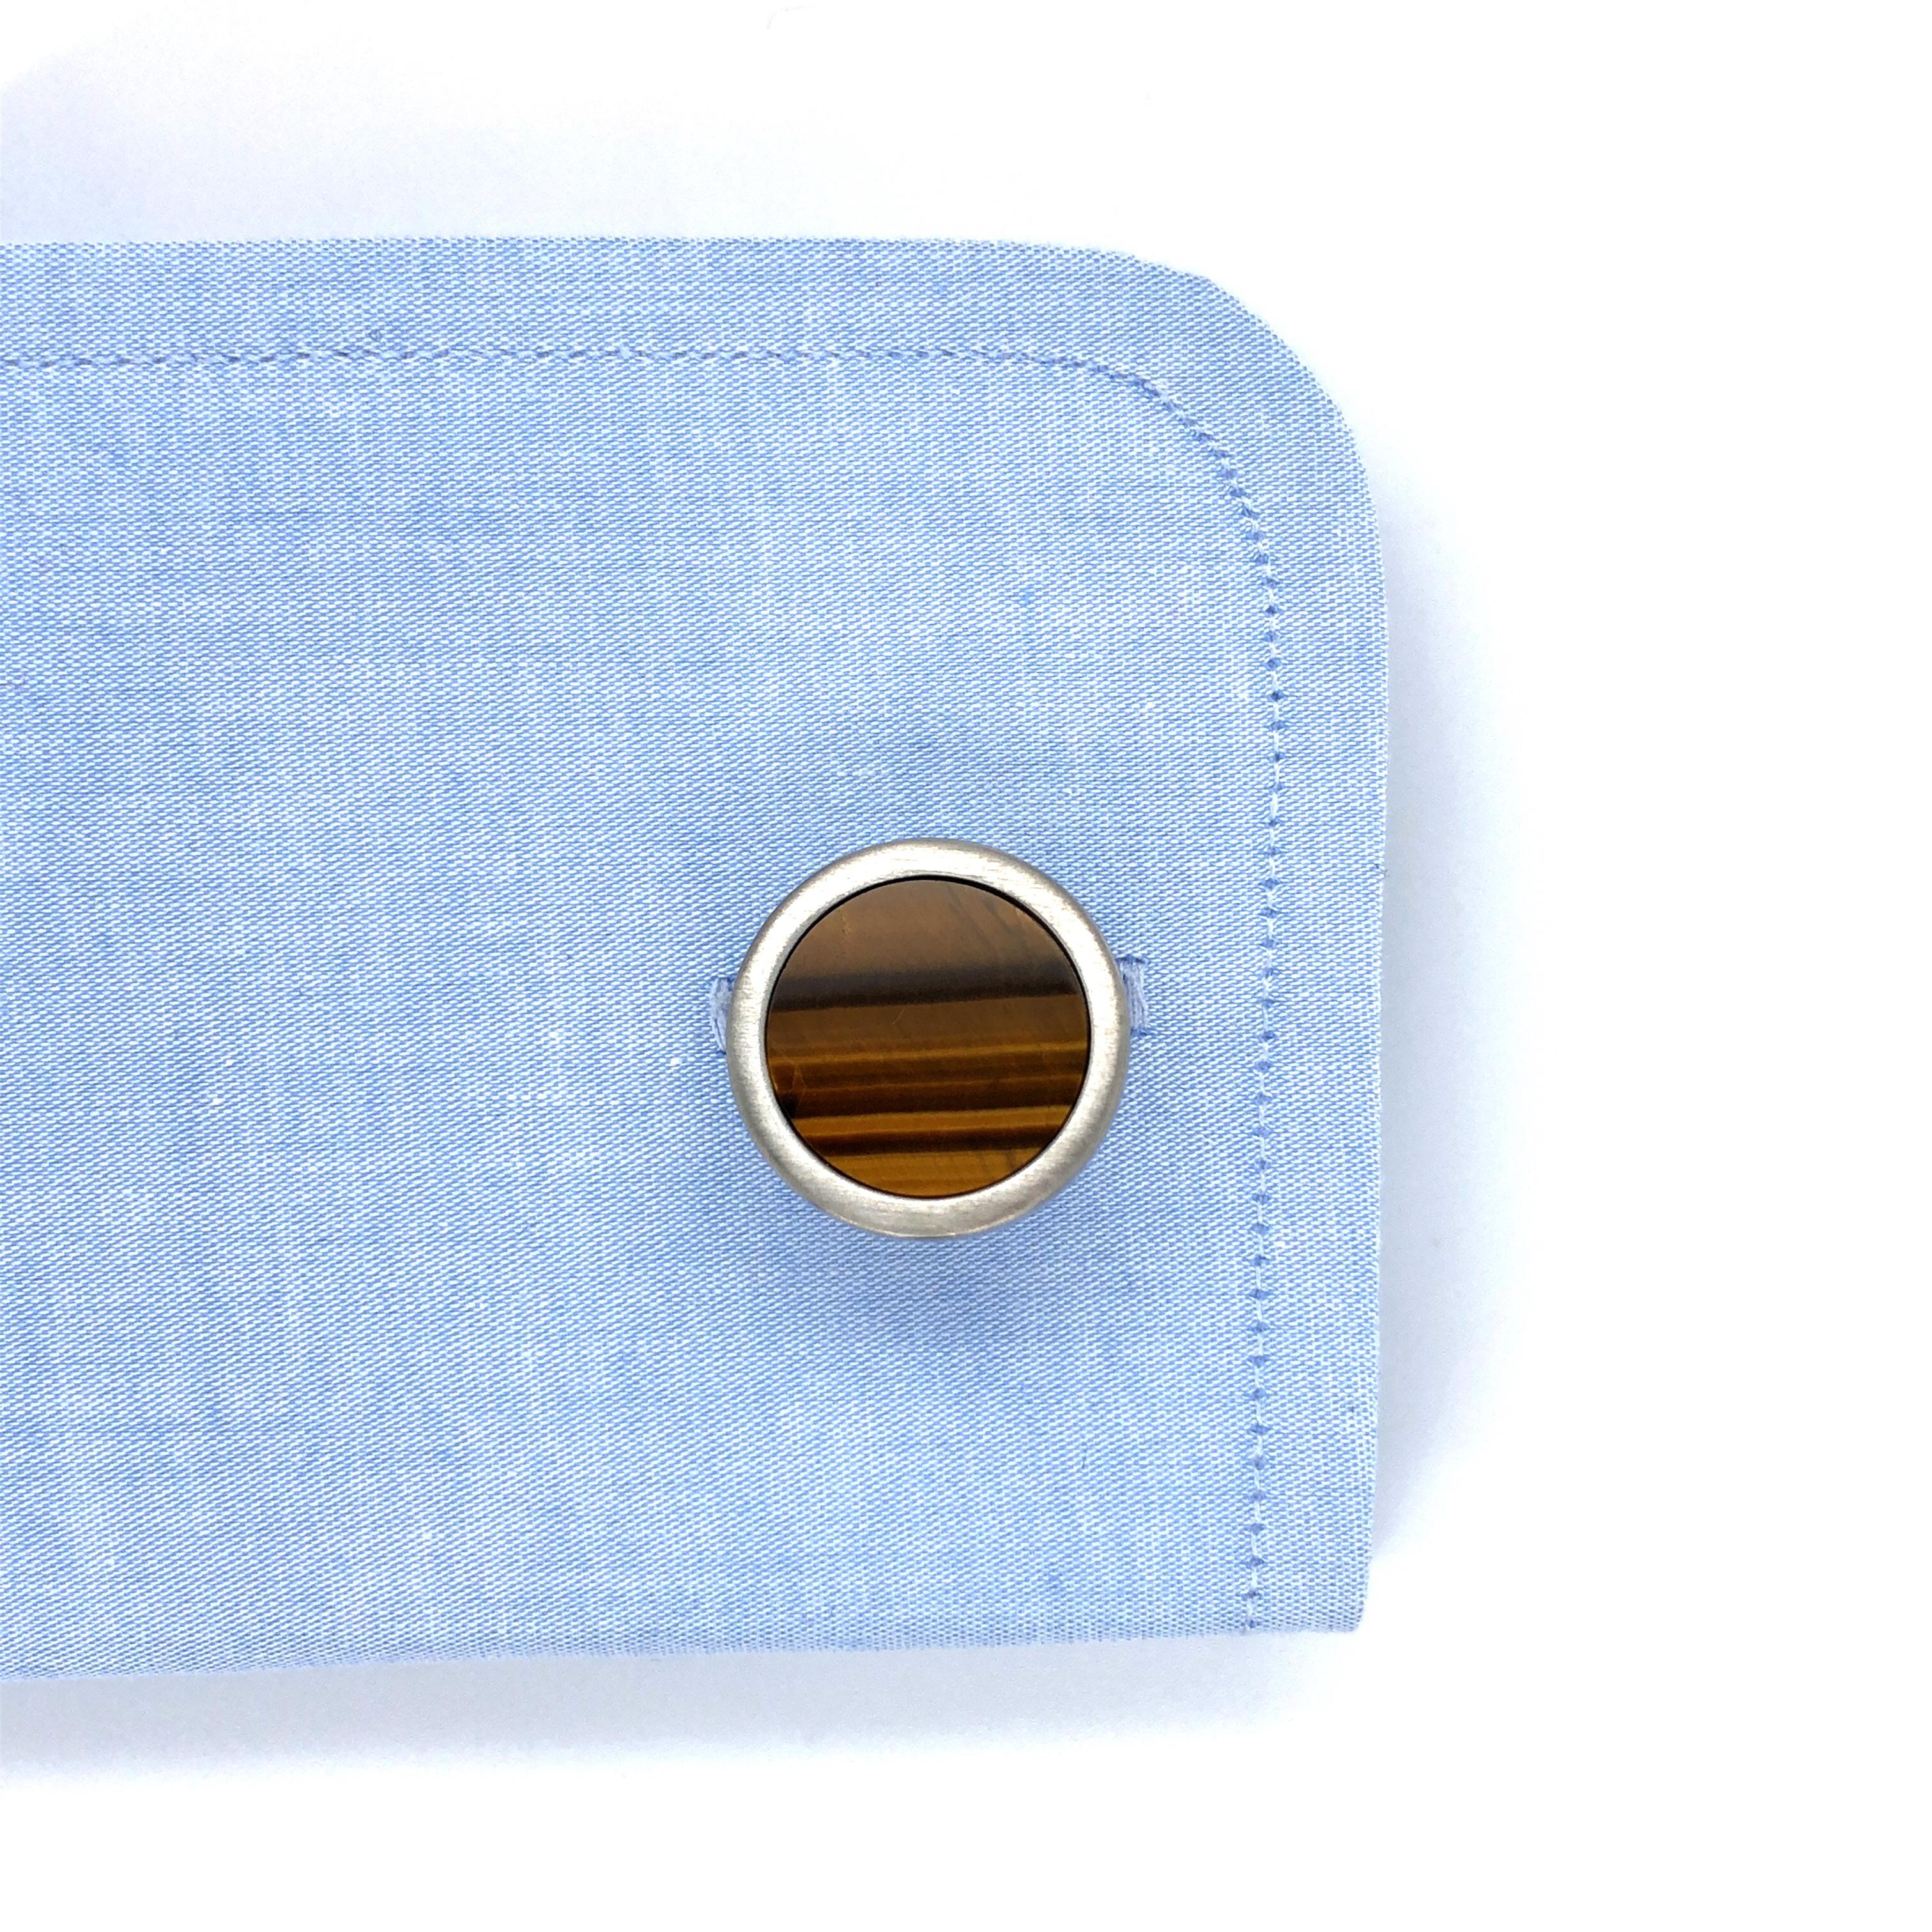 Round Cufflinks - Stainless Steel - Tiger Eye Gemstone Inlay - Diameter 19 mm For Sale 1